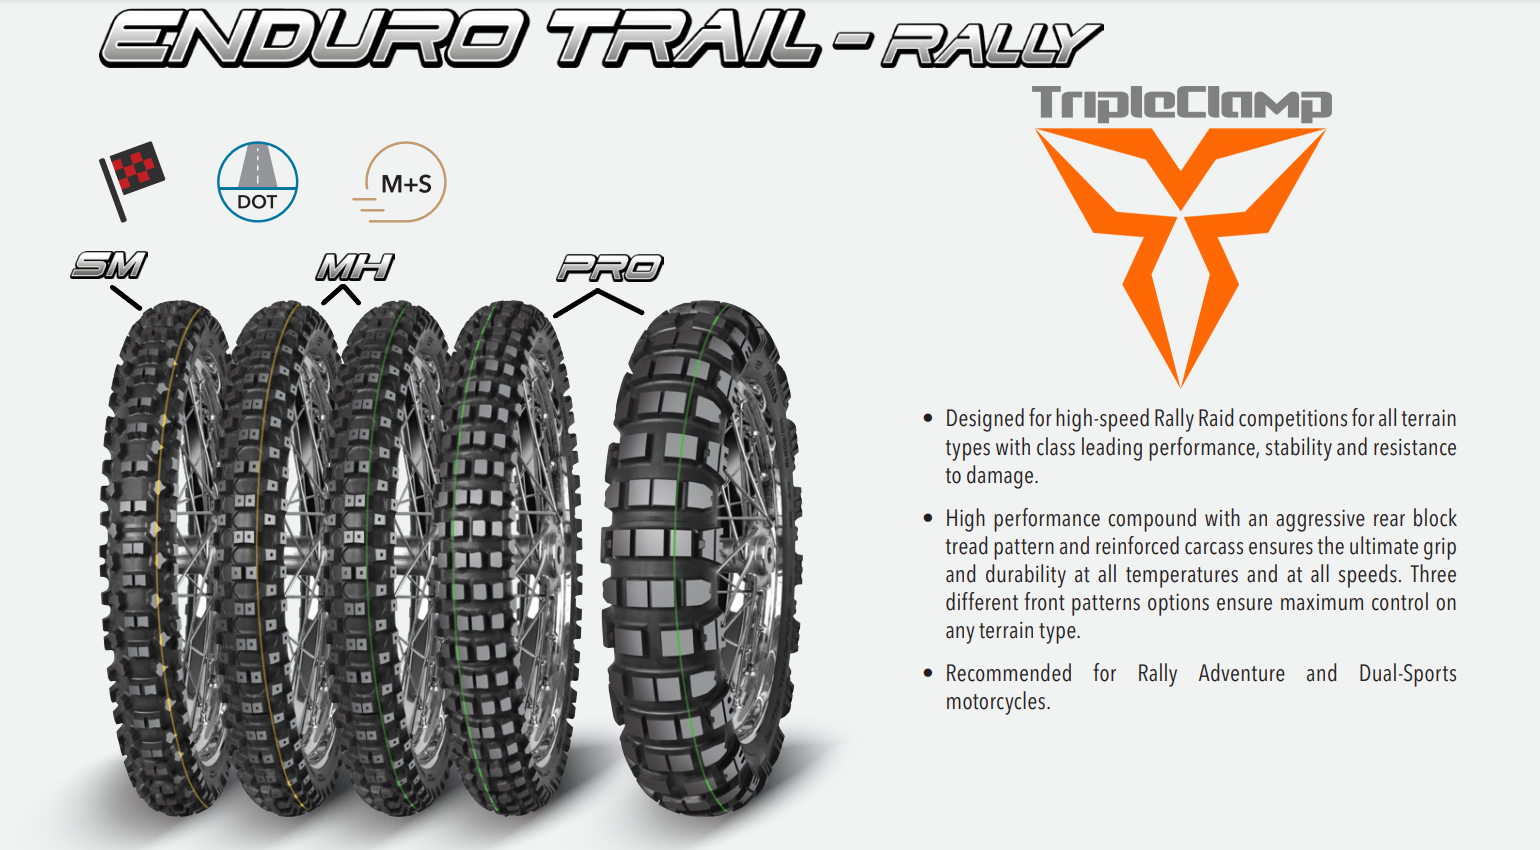 Mitas - Enduro Trail Rally Pro Tire